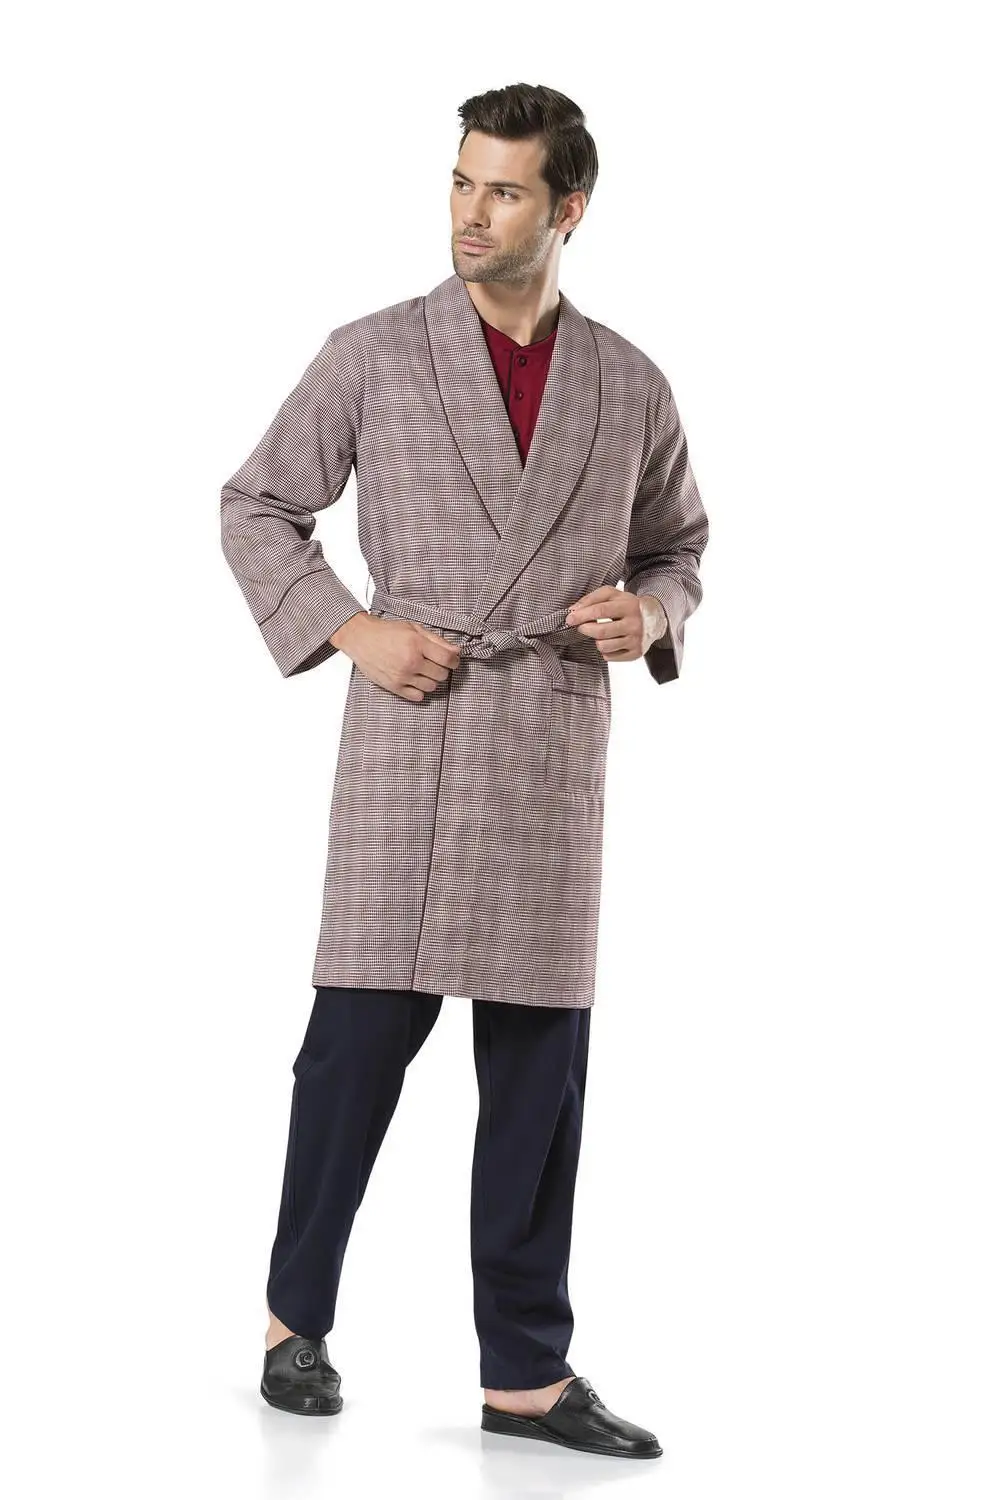 

Pierre Cardin Male 5'Li Set Röpteşambır Suit